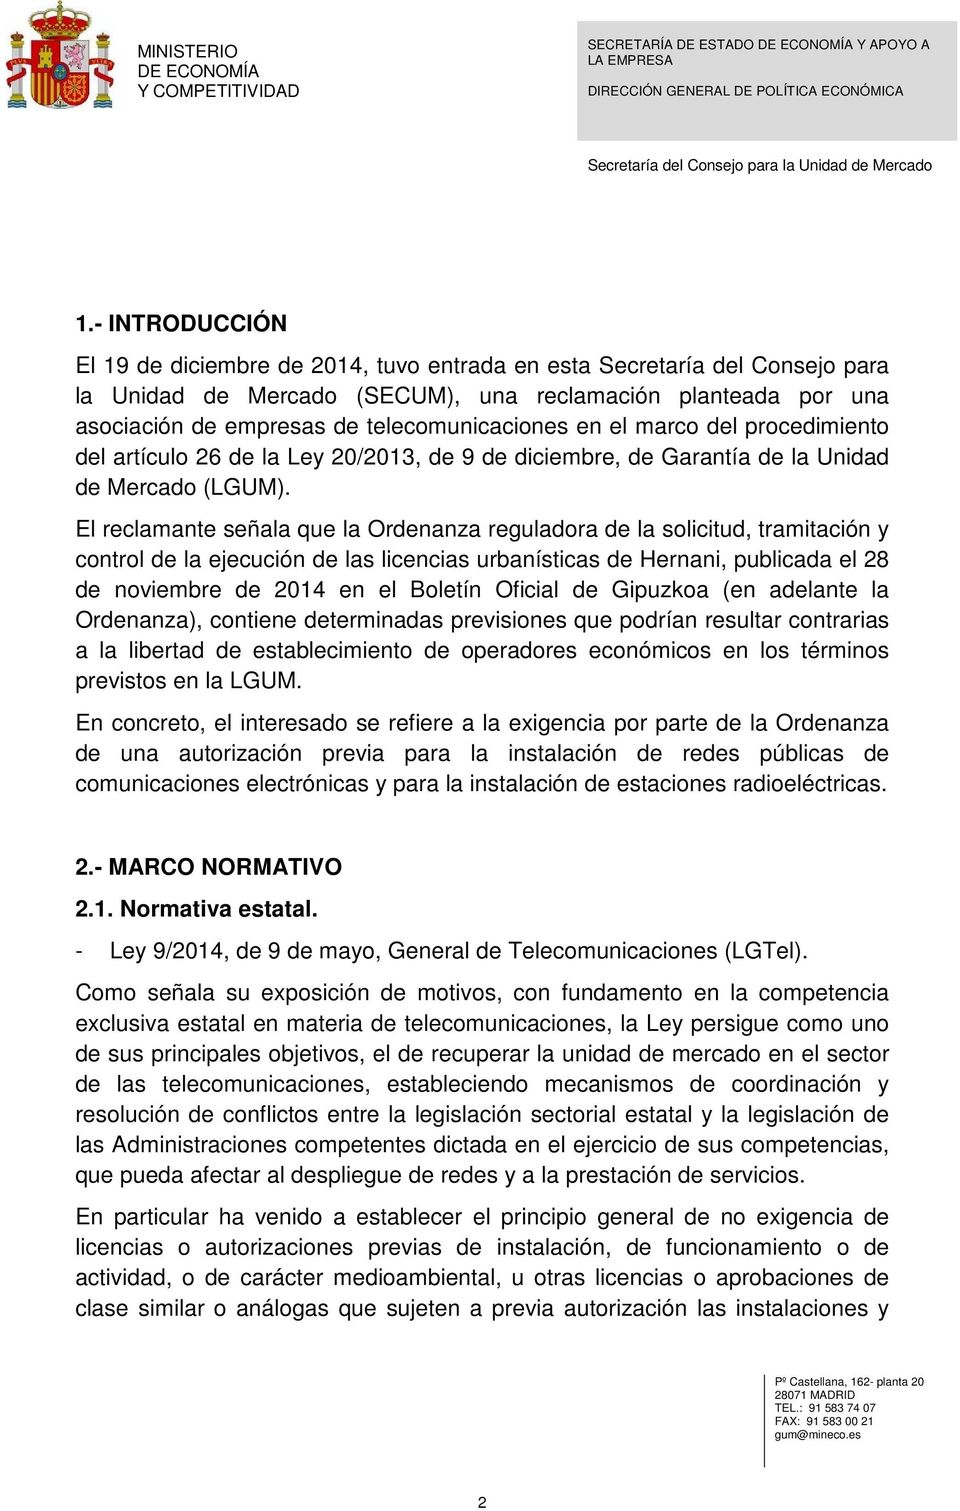 El reclamante señala que la Ordenanza reguladora de la solicitud, tramitación y control de la ejecución de las licencias urbanísticas de Hernani, publicada el 28 de noviembre de 2014 en el Boletín